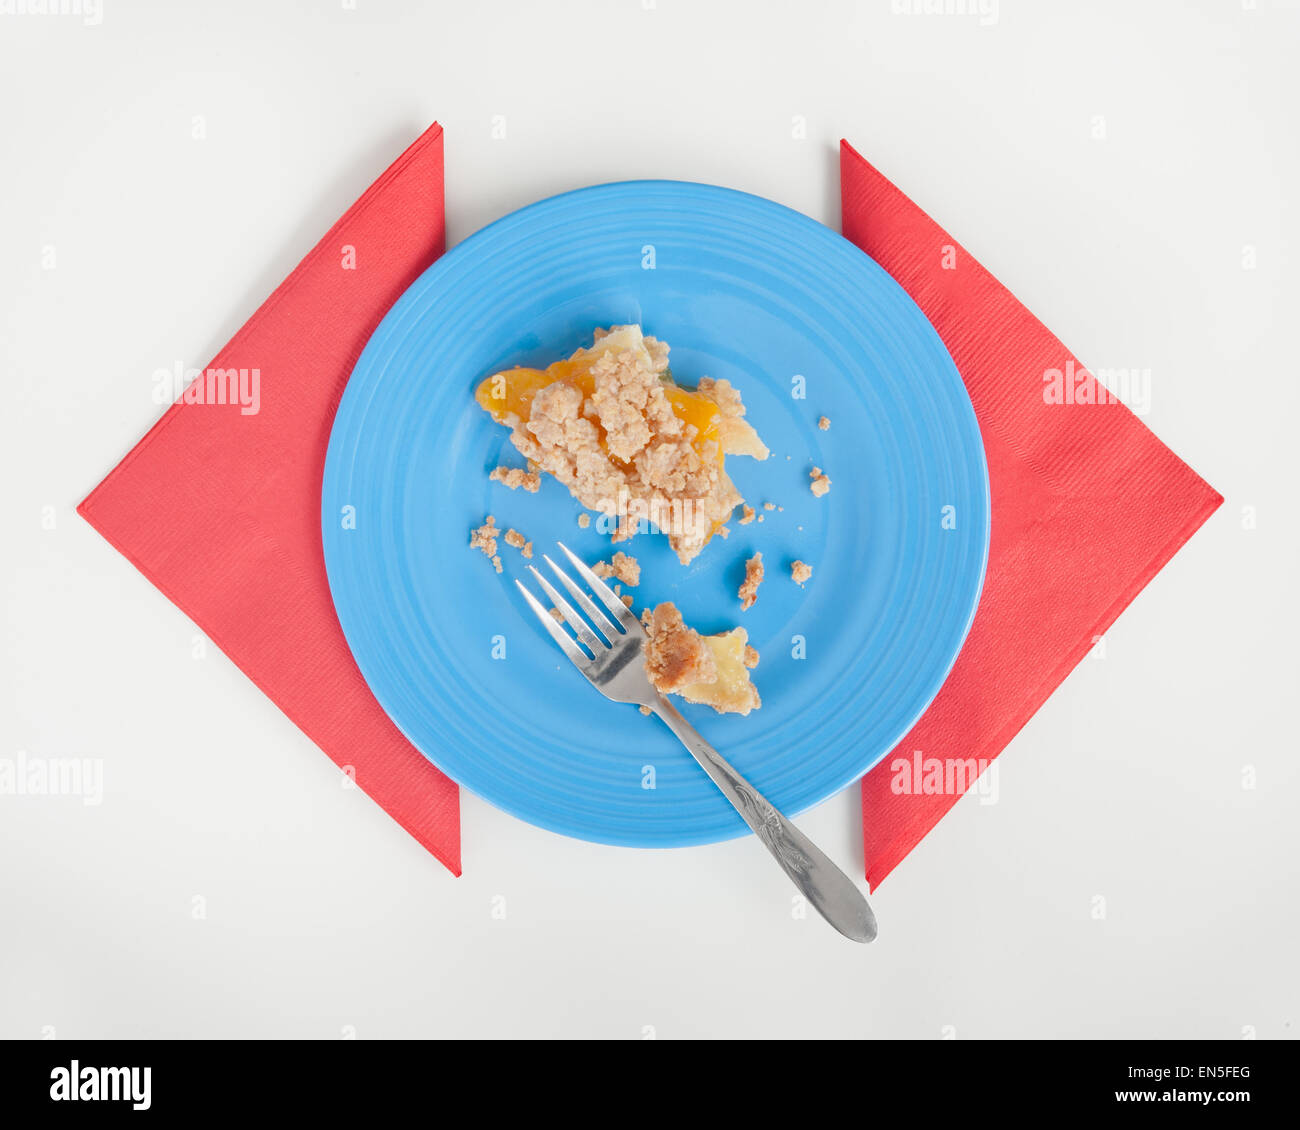 Peach Crumble pie avanzi sulla piastra blu con tovaglioli rosso. White la superficie del tavolo. Foto Stock